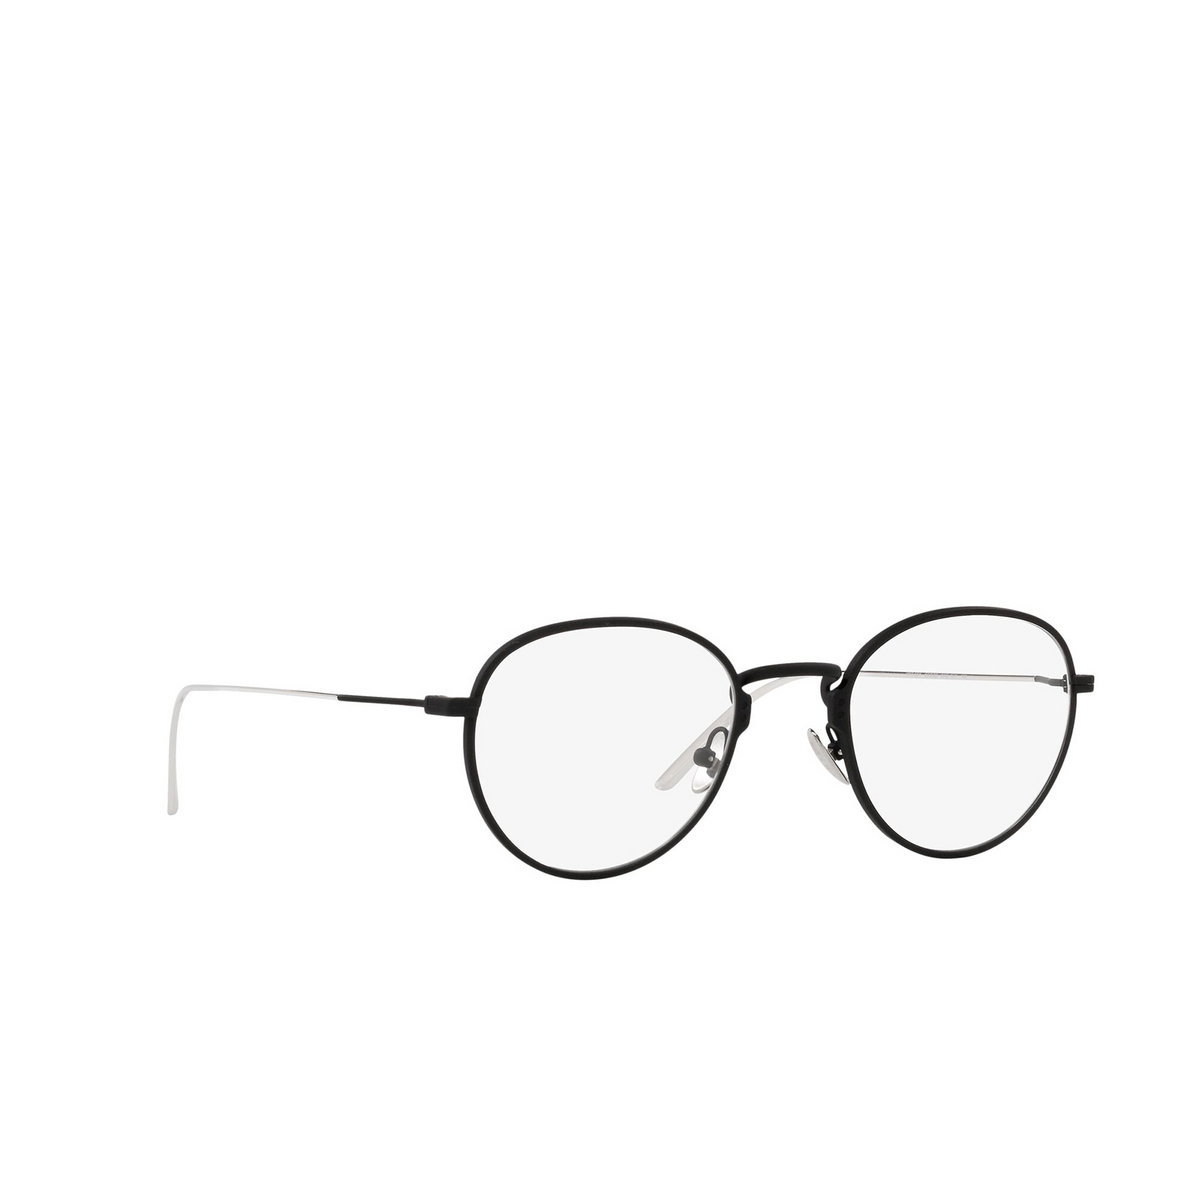 Prada® Oval Eyeglasses: PR 50YV color Matte Black 04Q1O1 - three-quarters view.